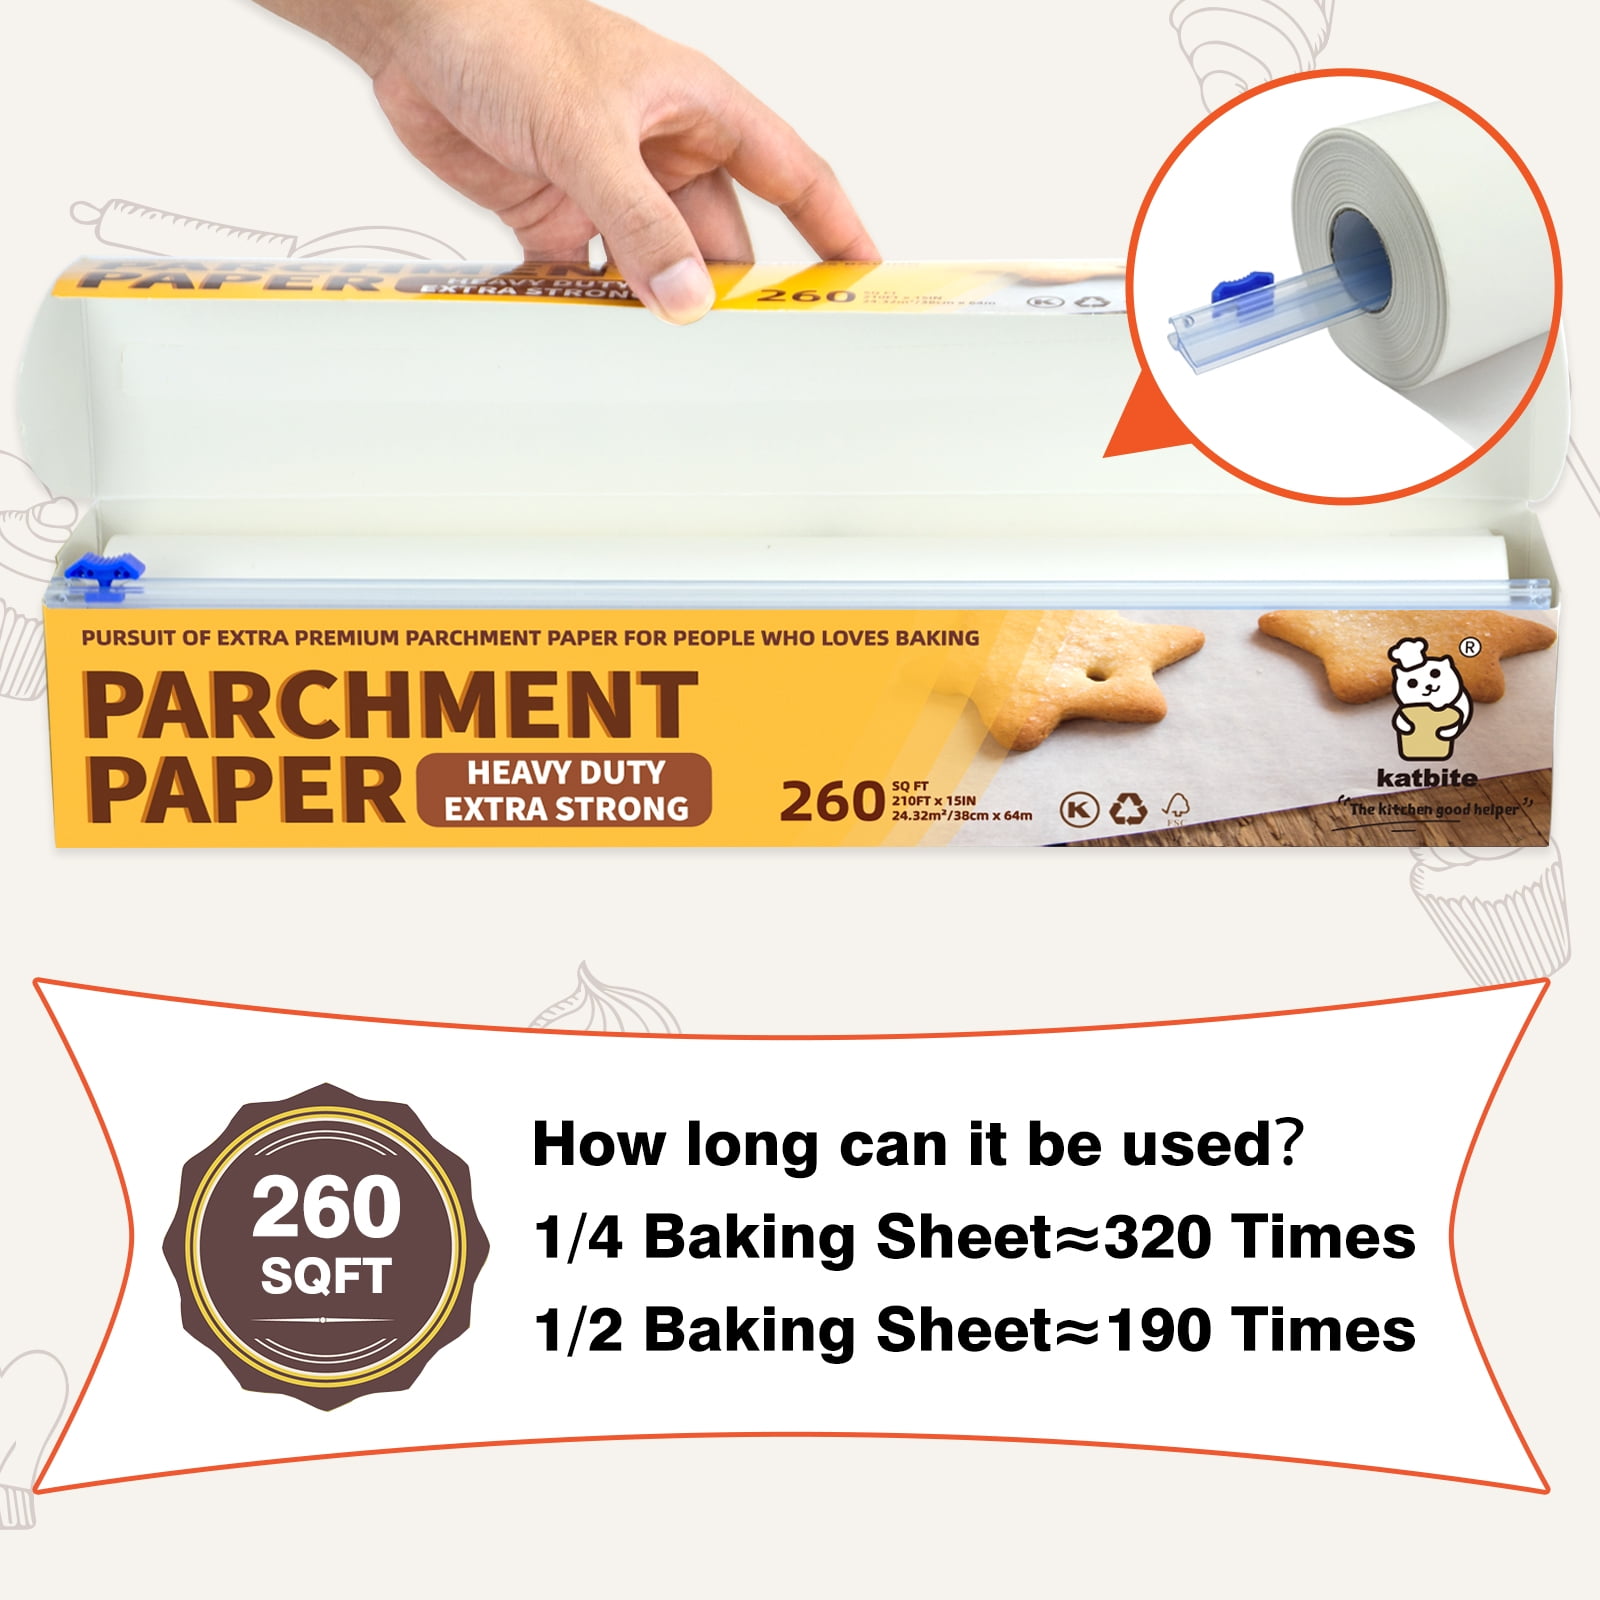 Katbite Parchment Paper Roll 15 inch x164 ft 205 SQ FT & 12 inch x 164ft  Heavy Duty Parchment Paper for Baking